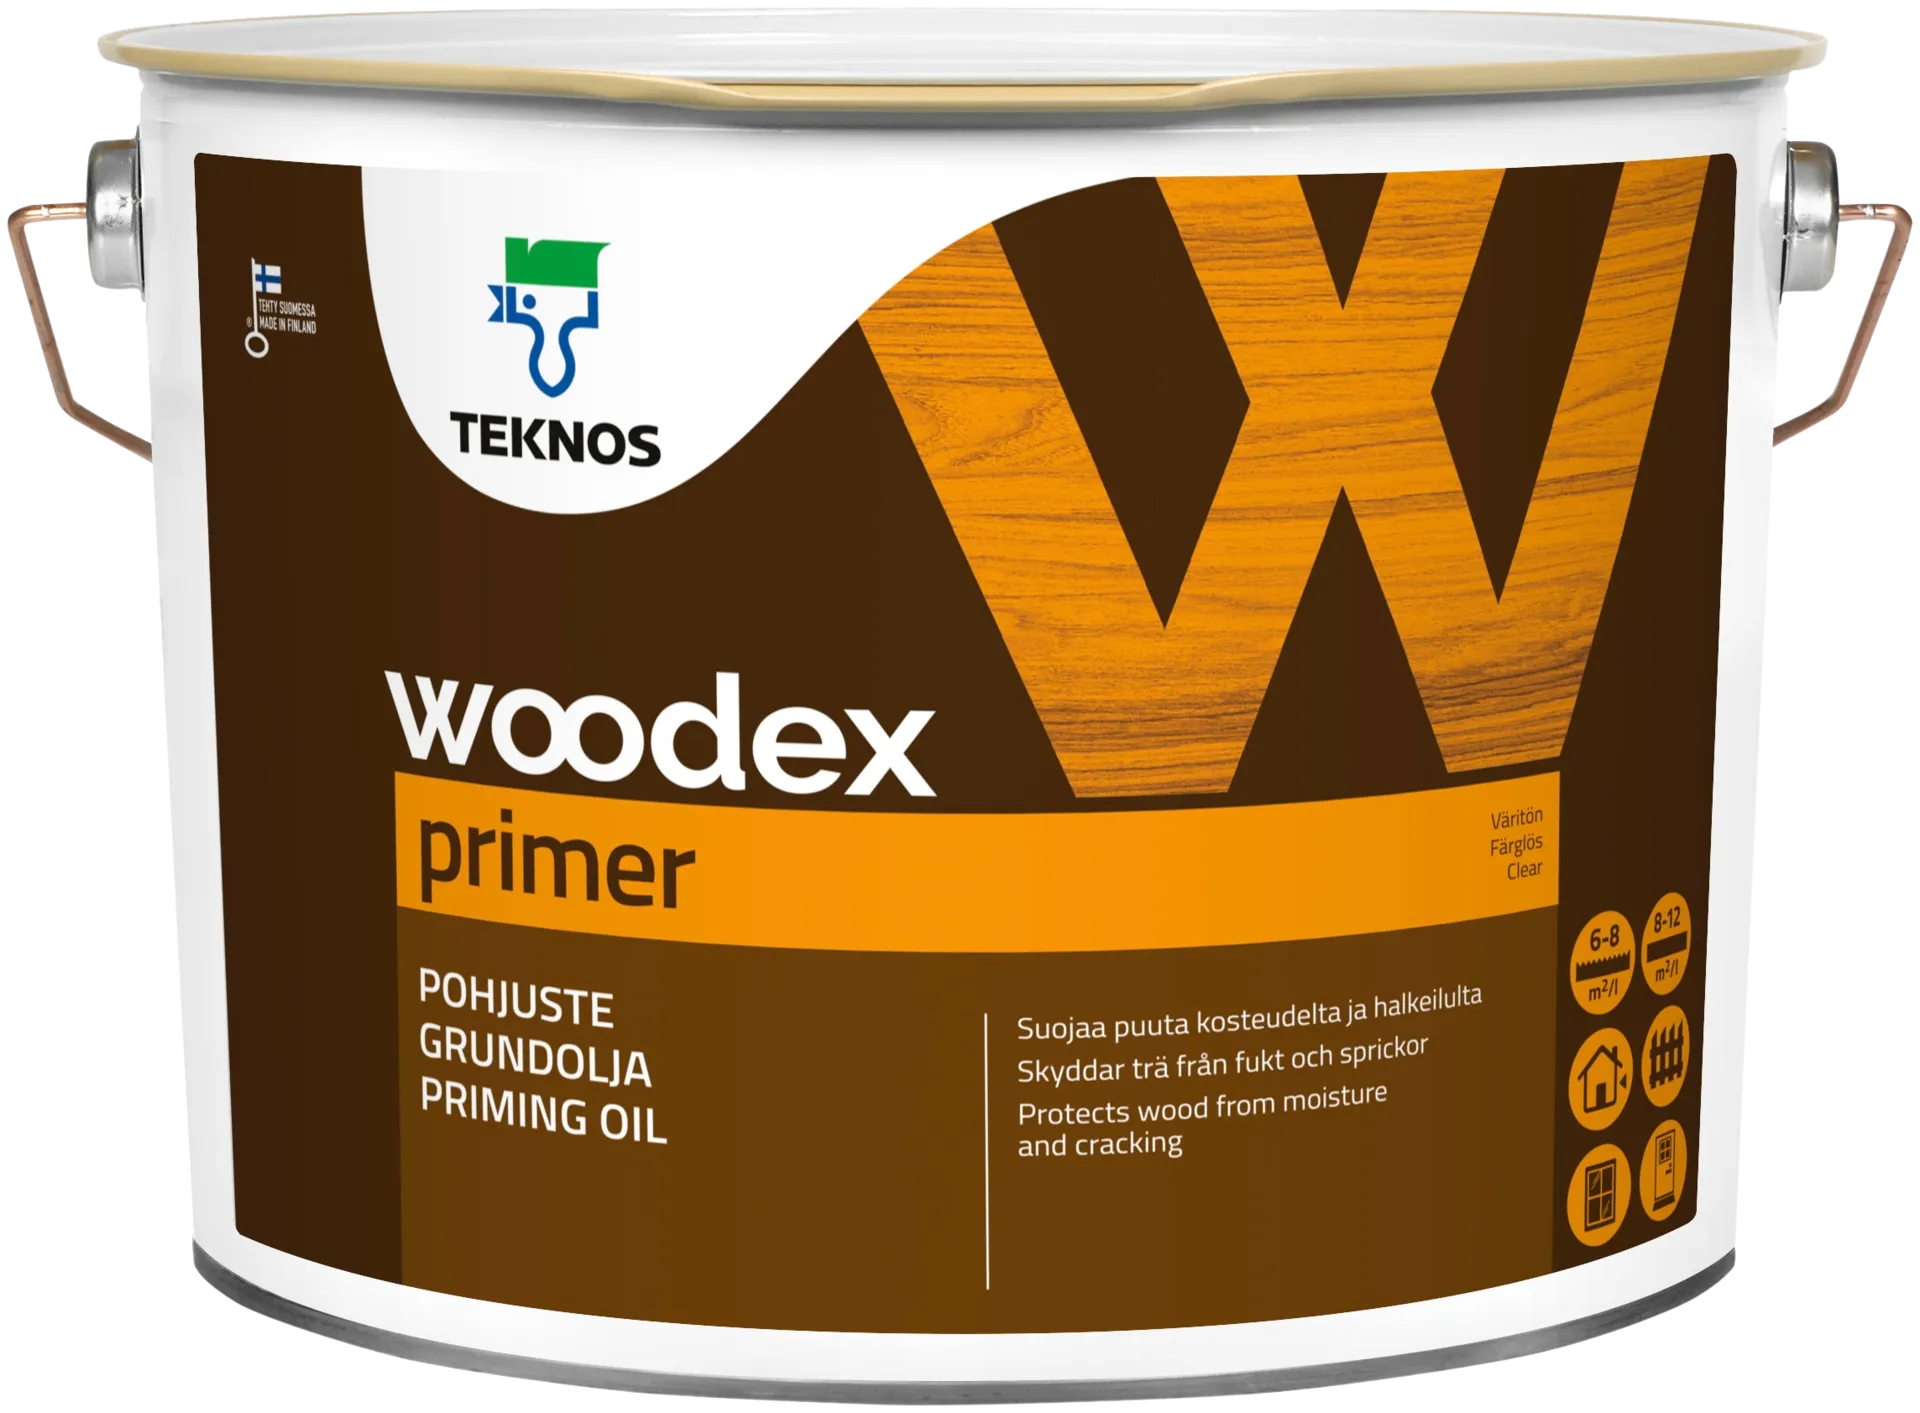 Teknos pohjuste Woodex Primer 10 l väritön